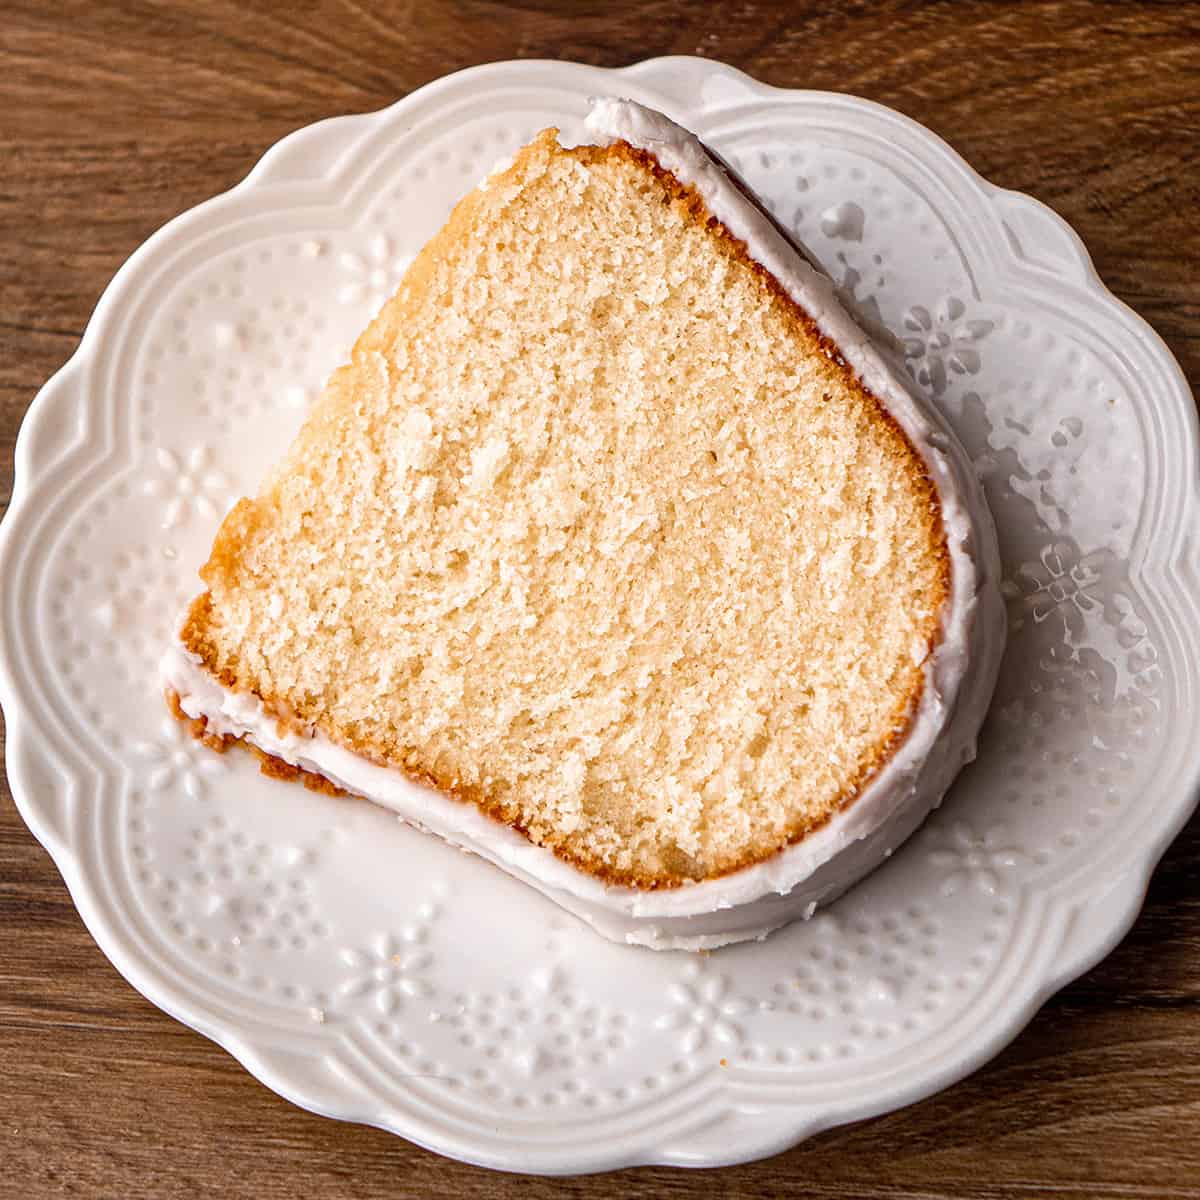 a slice of Vanilla Bundt Cake on a plate